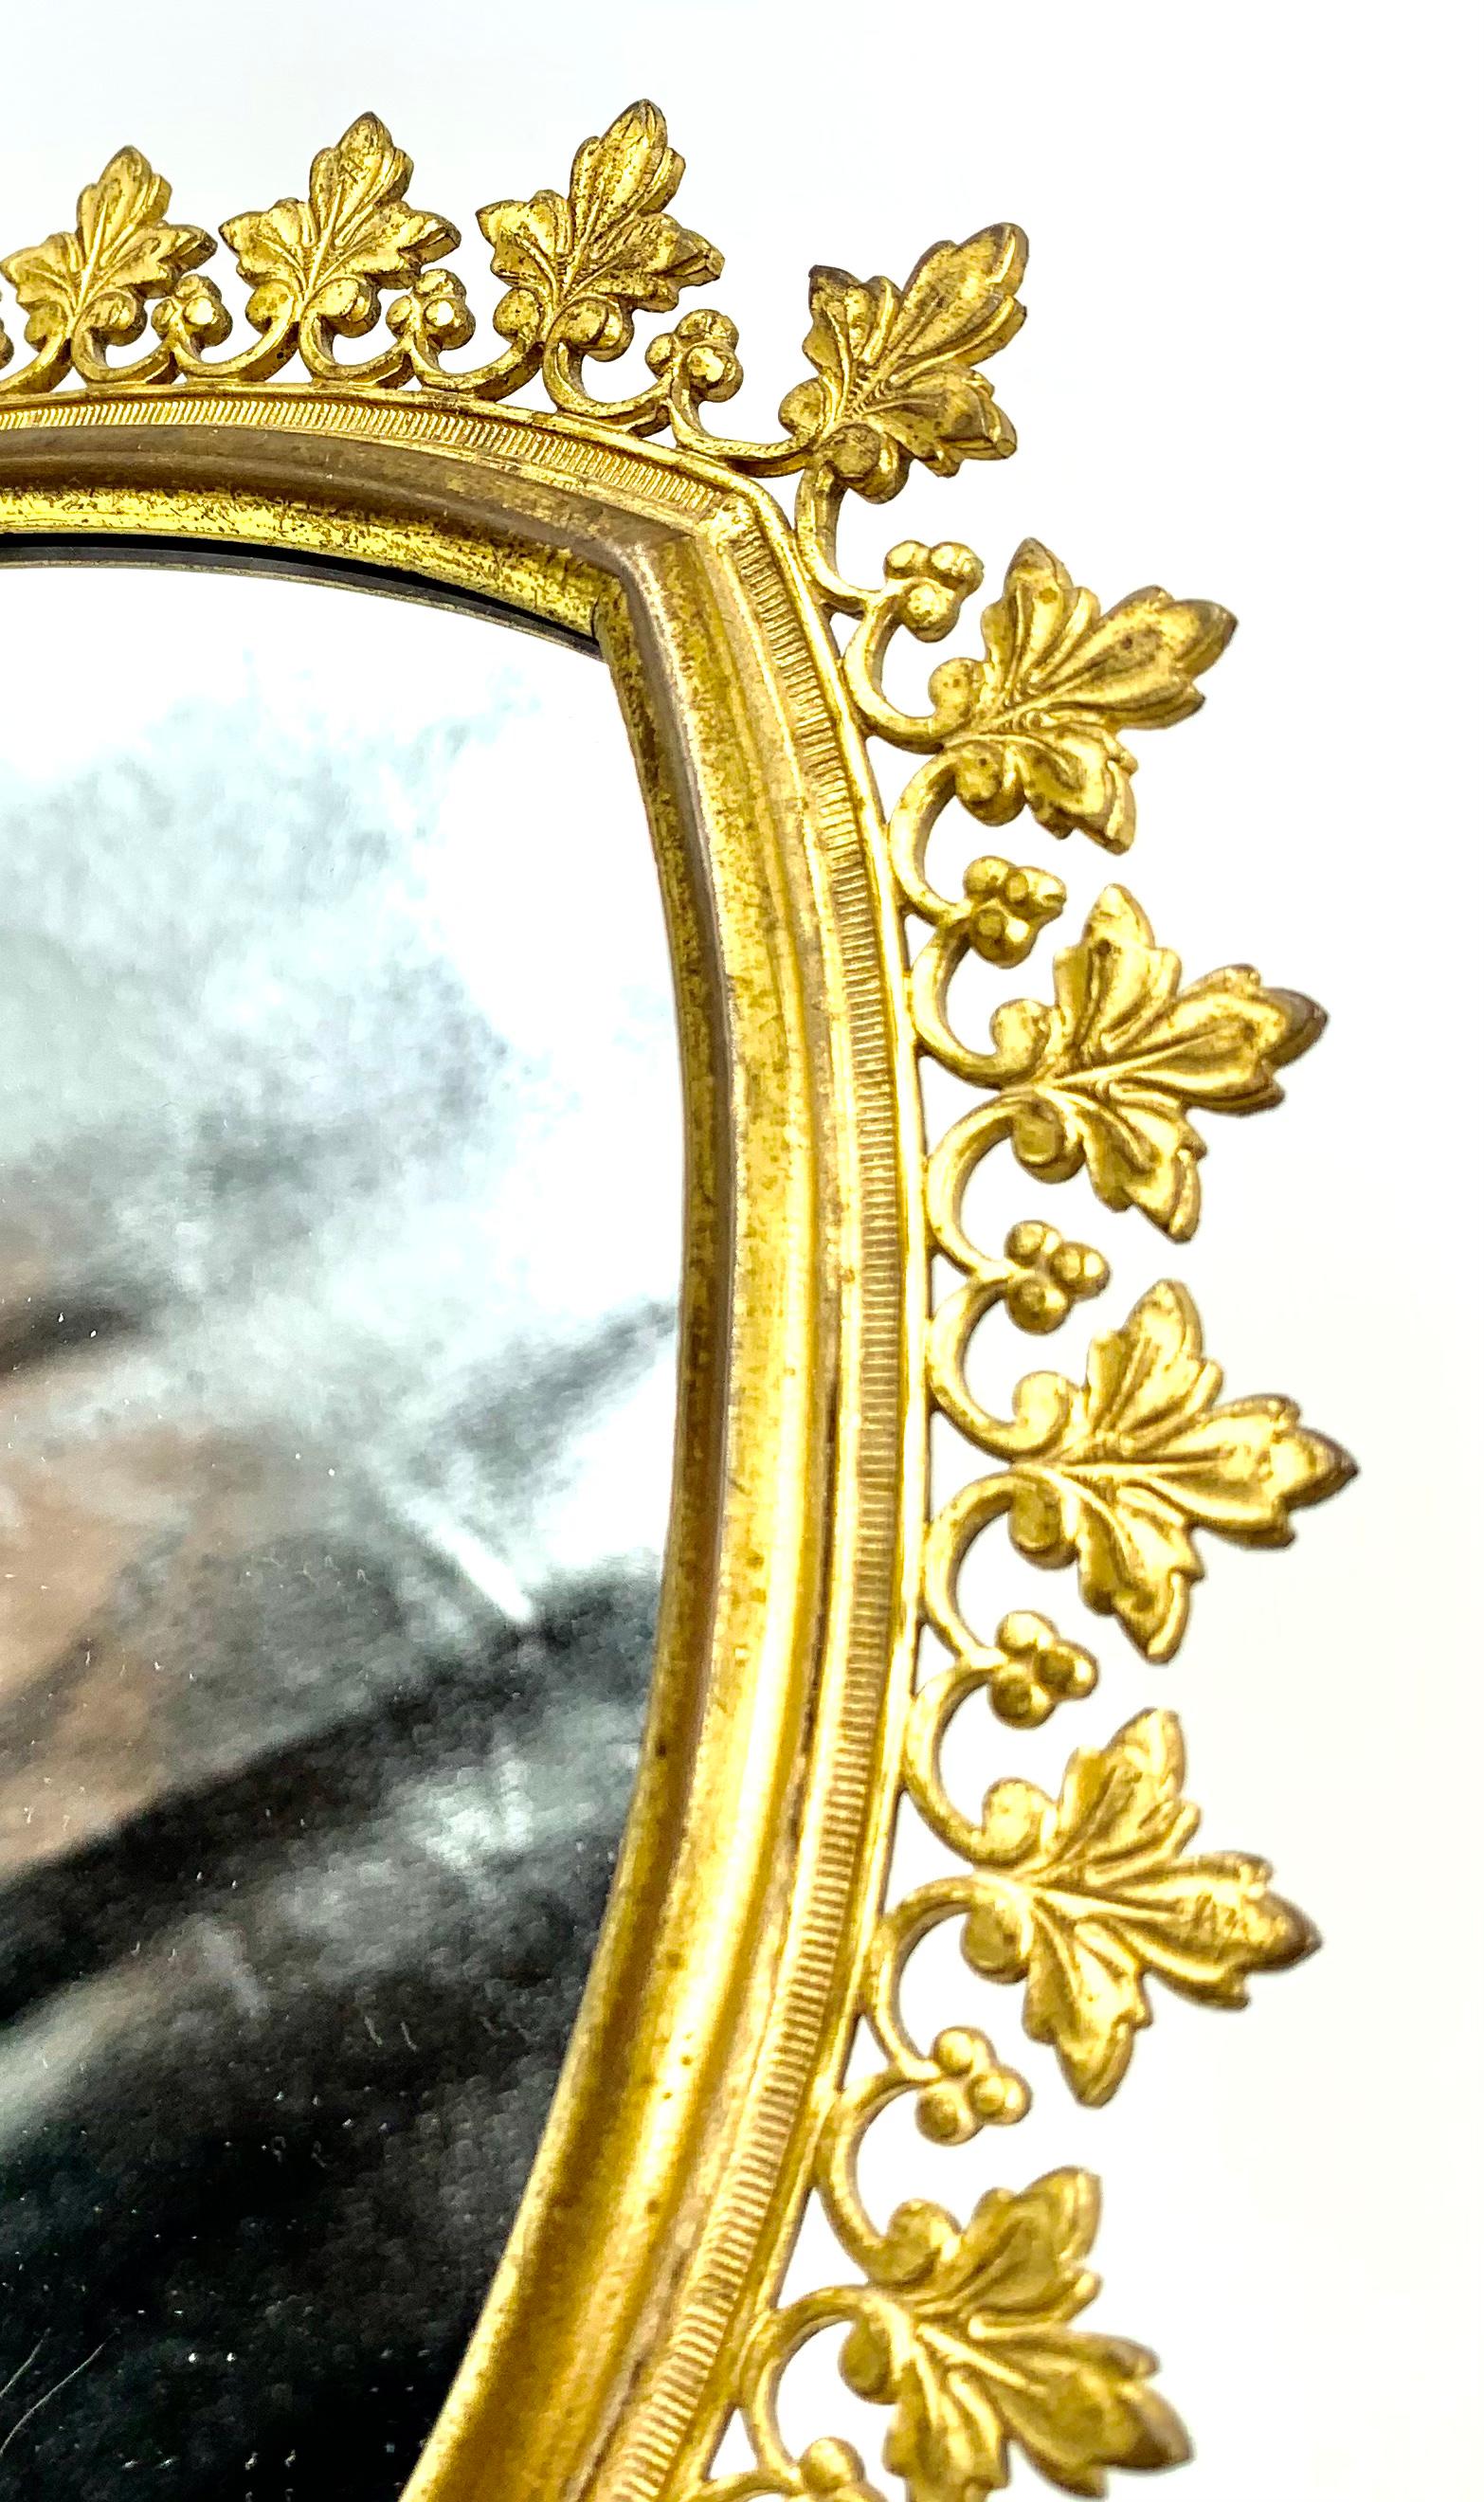 Eleganter und stilvoller Kosmetikspiegel aus vergoldeter Bronze in gotischer Bogenform, Frankreich, 19. Jahrhundert. Eine fabelhafte Ergänzung für ein Master-Bad oder einen Schminktisch. Feines Detail mit ungewöhnlichem Dreiblattmuster, schöne